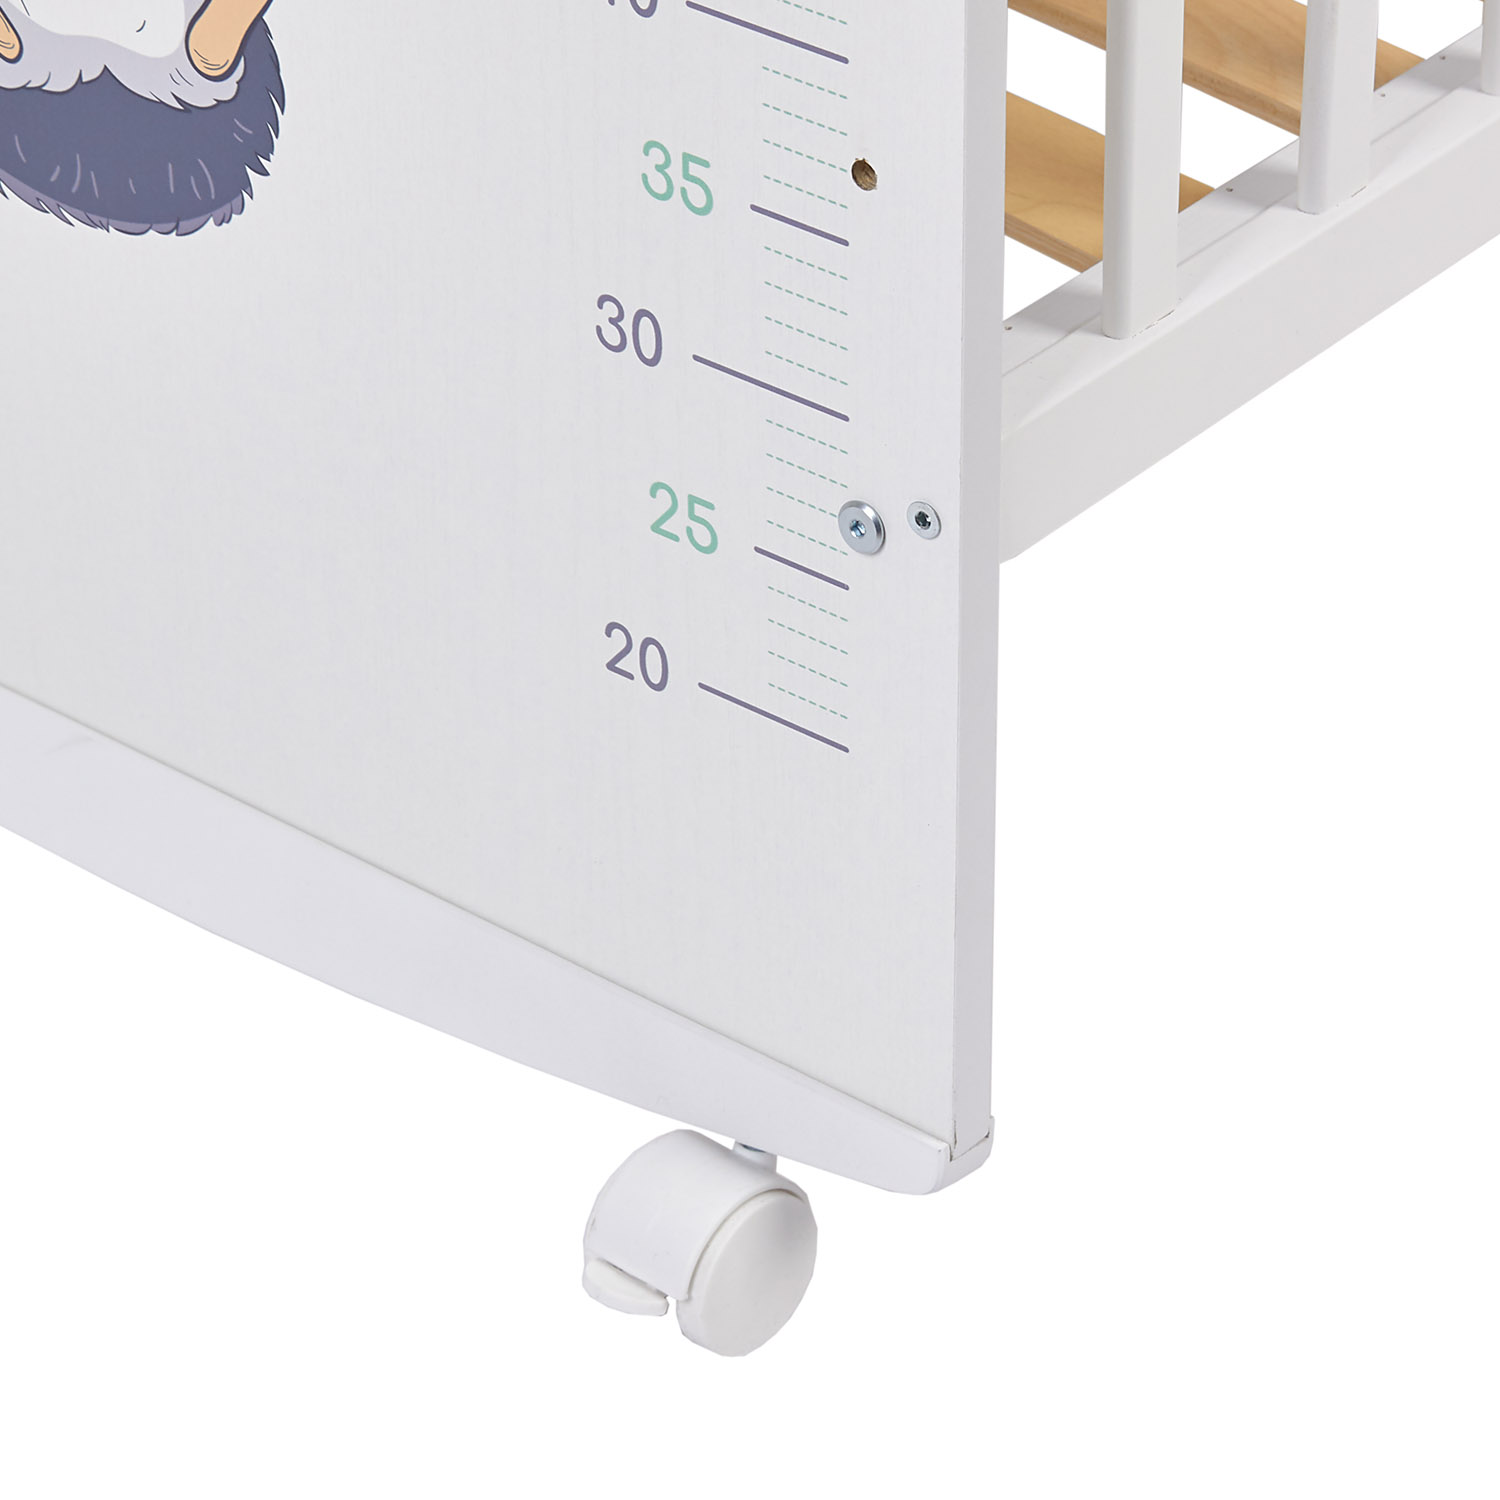 Детская кроватка Фея 702 Ежик на шаре прямоугольная, без маятника (белый) - фото 18